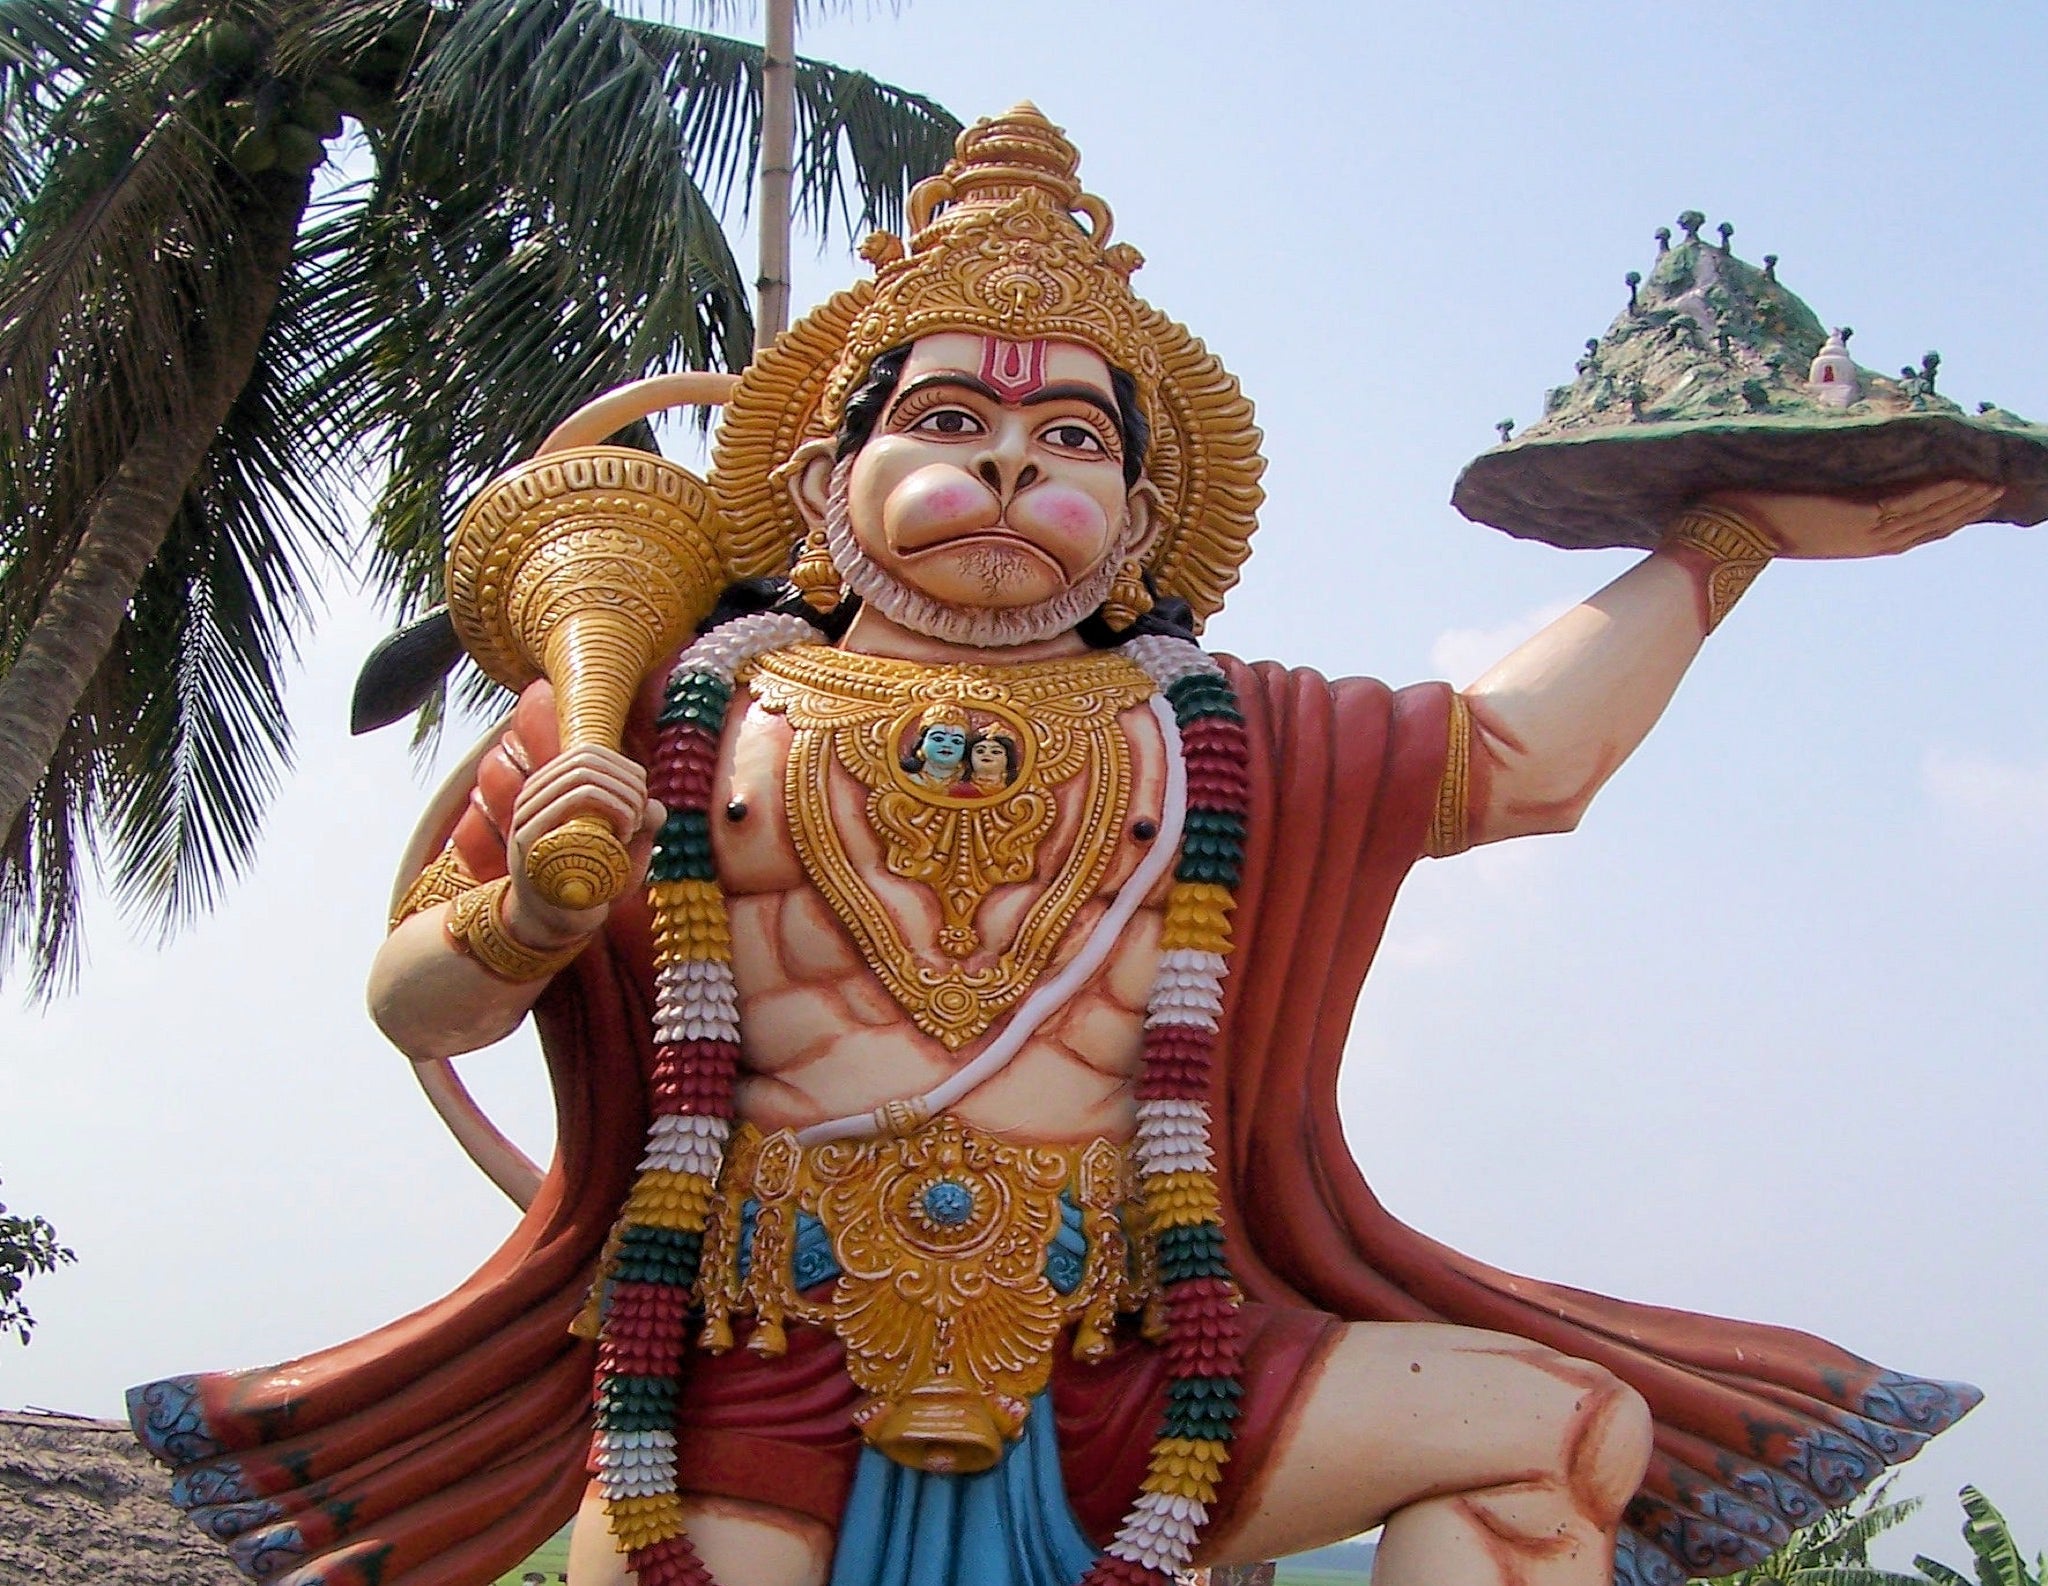 A statue of Hanuman in Odisha, India